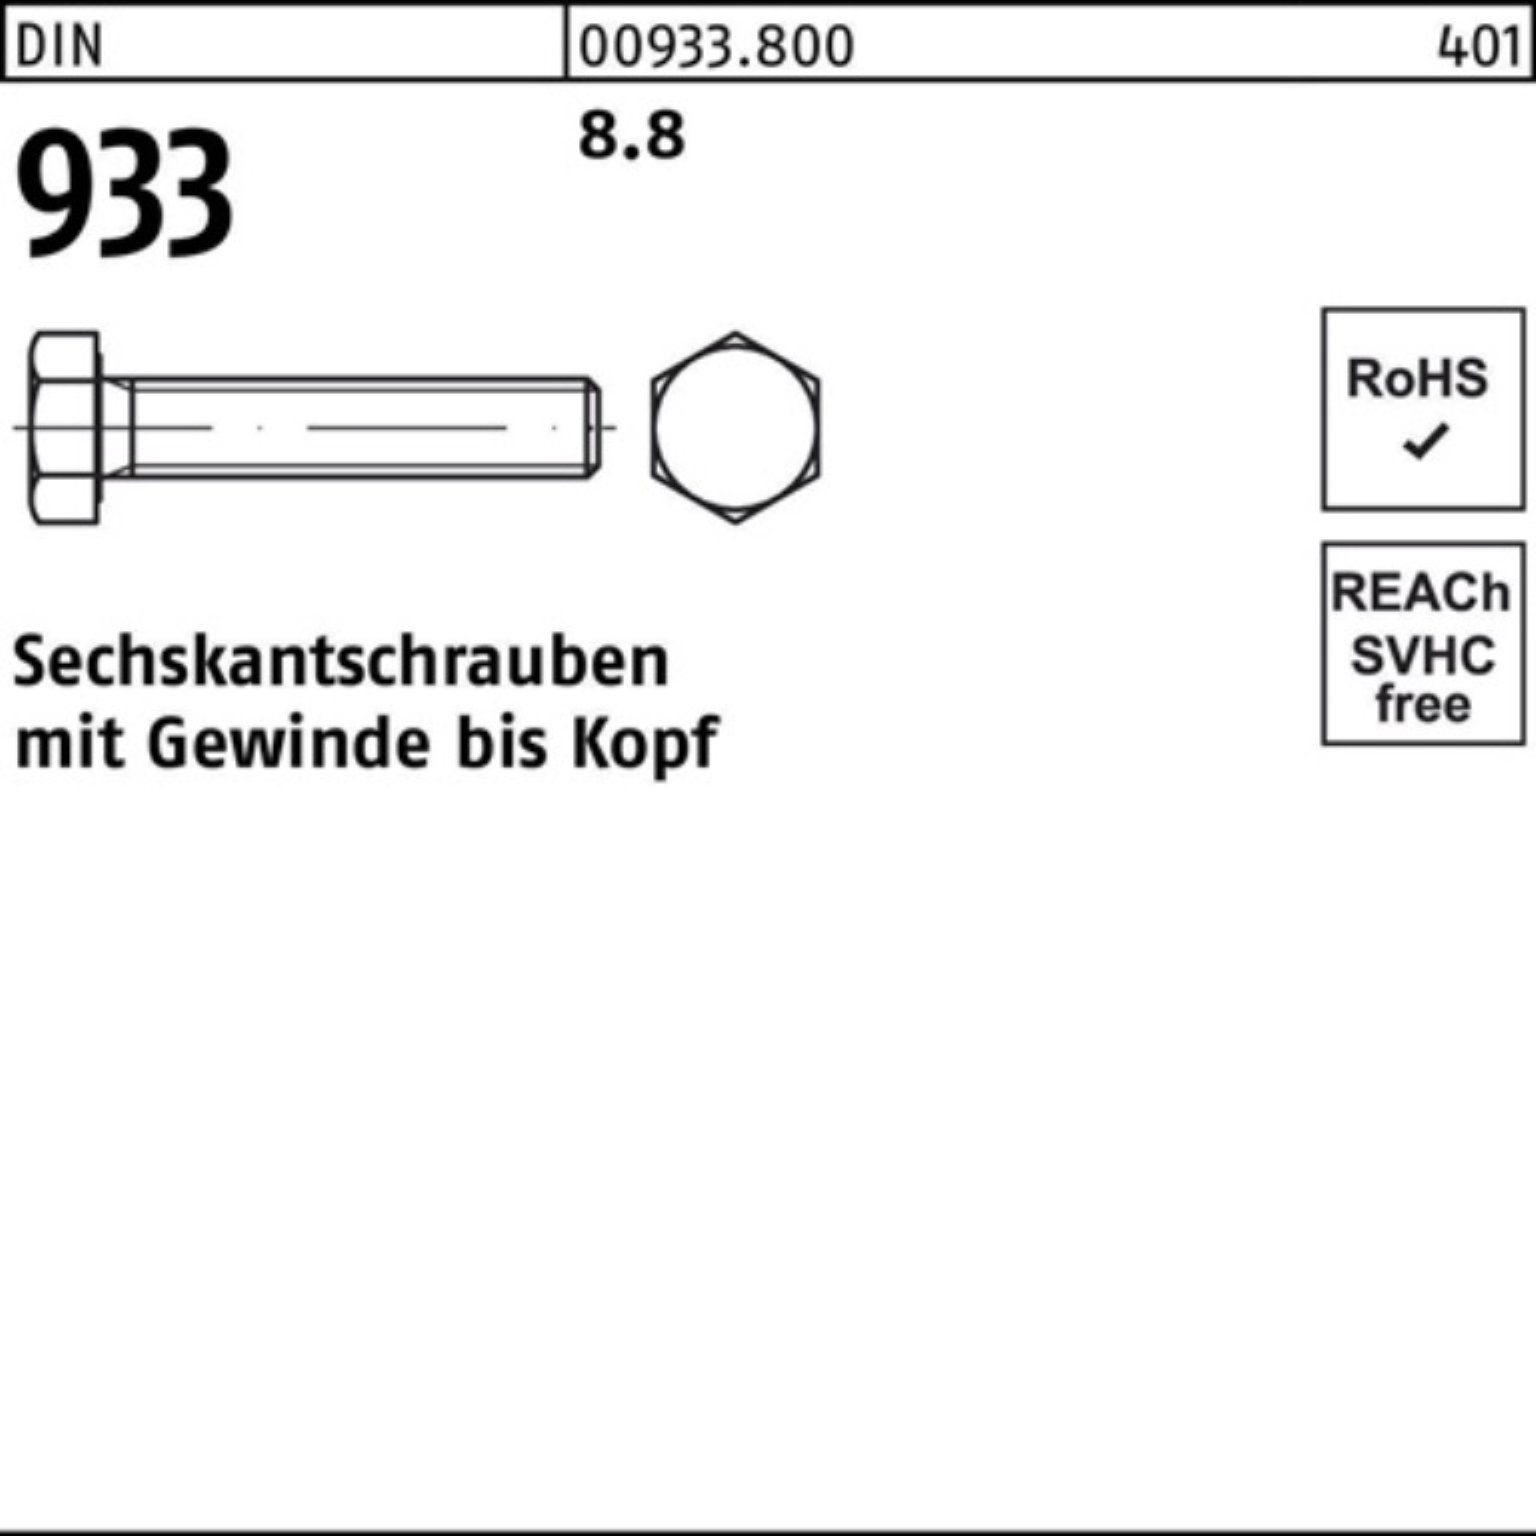 40 8.8 DIN VG 933 933 Sechskantschraube Reyher Sechskantschraube 50 100er Pack Stück DIN M16x